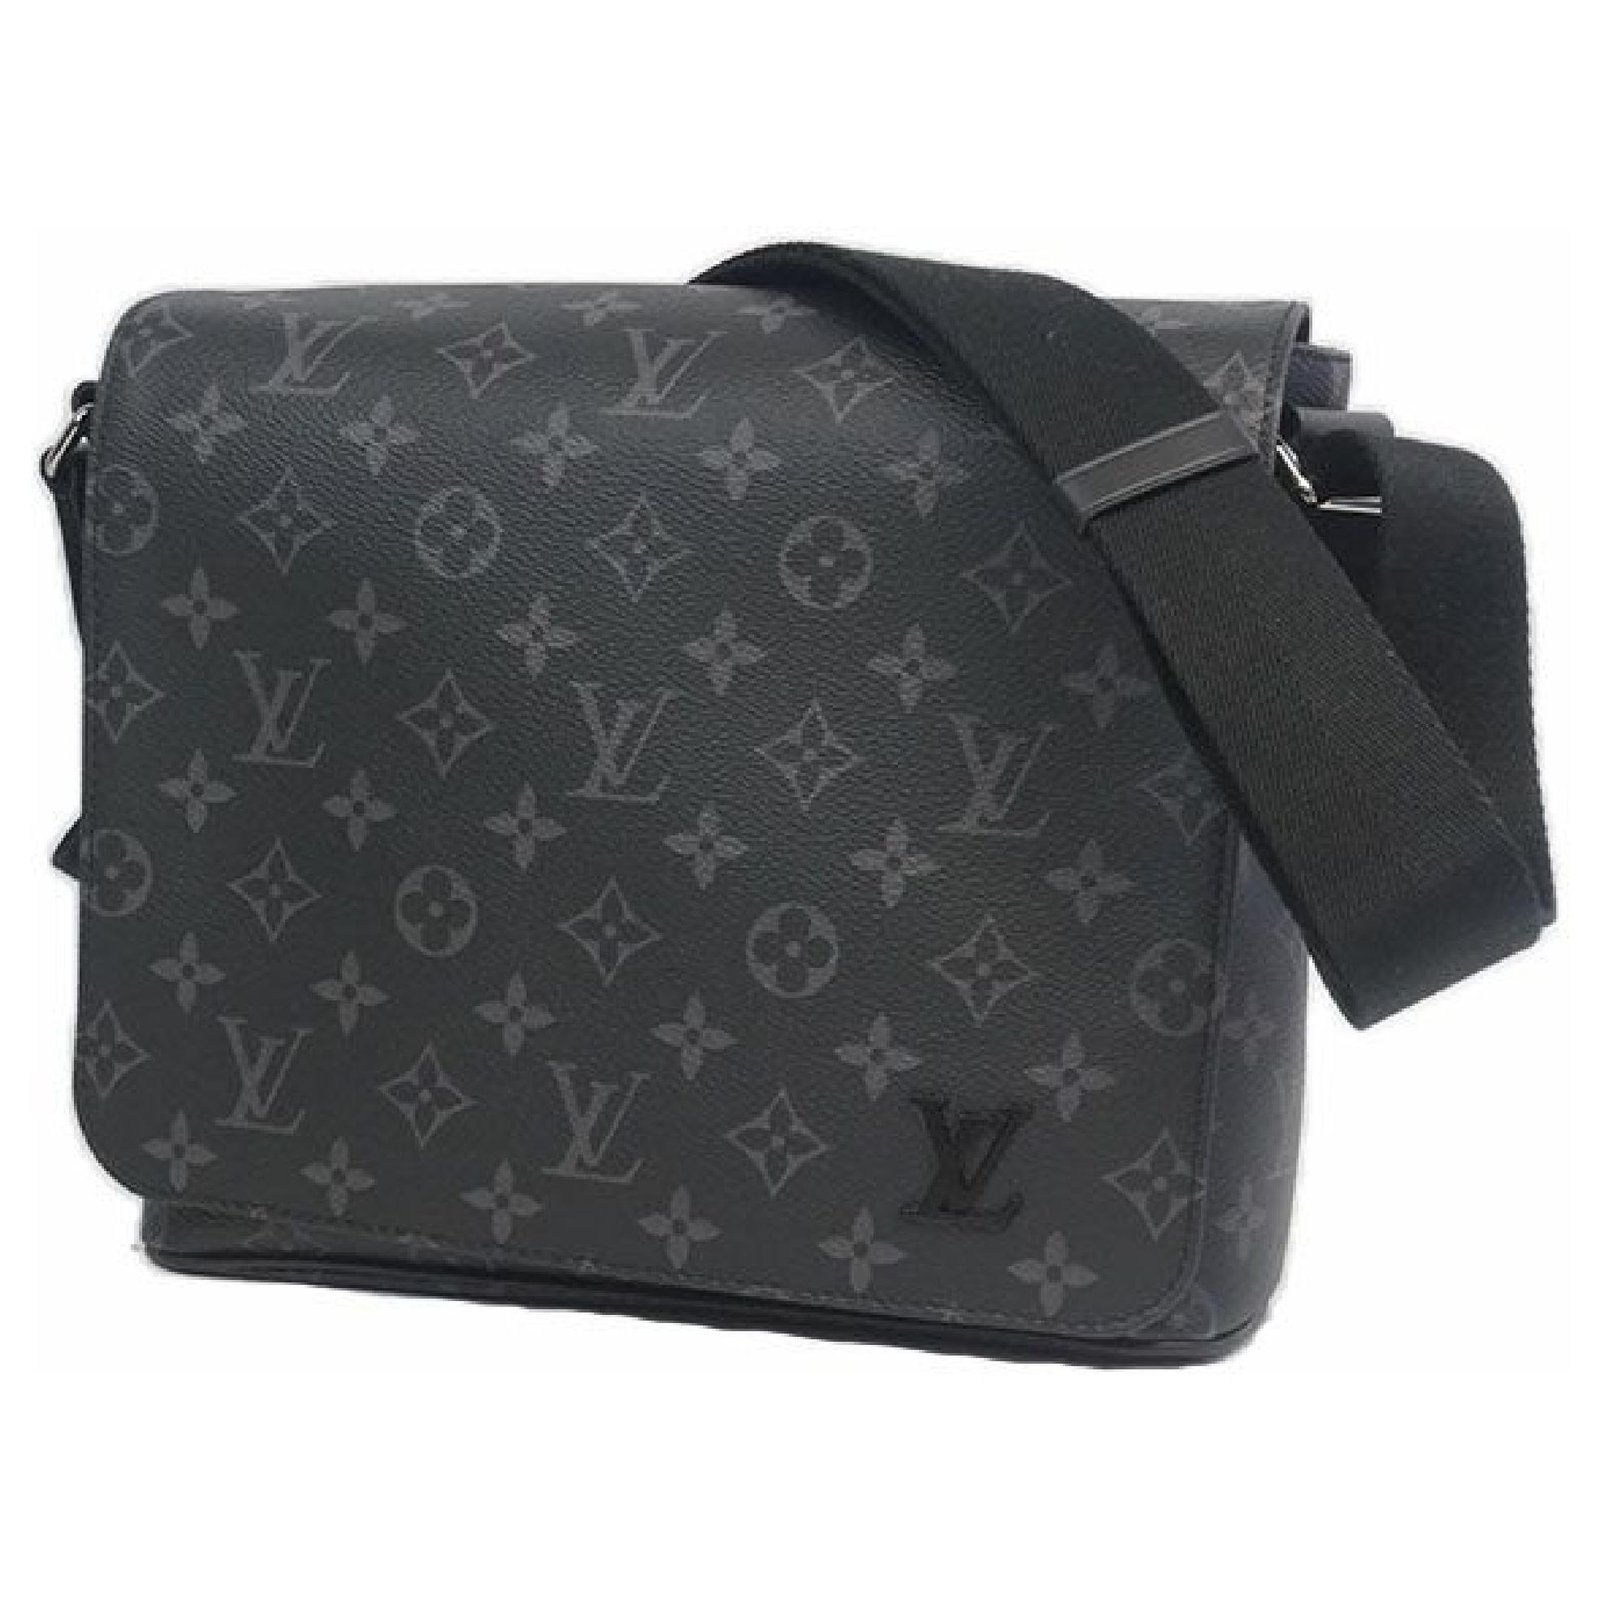 Louis Vuitton District PM Messenger Bag in Black, Men's